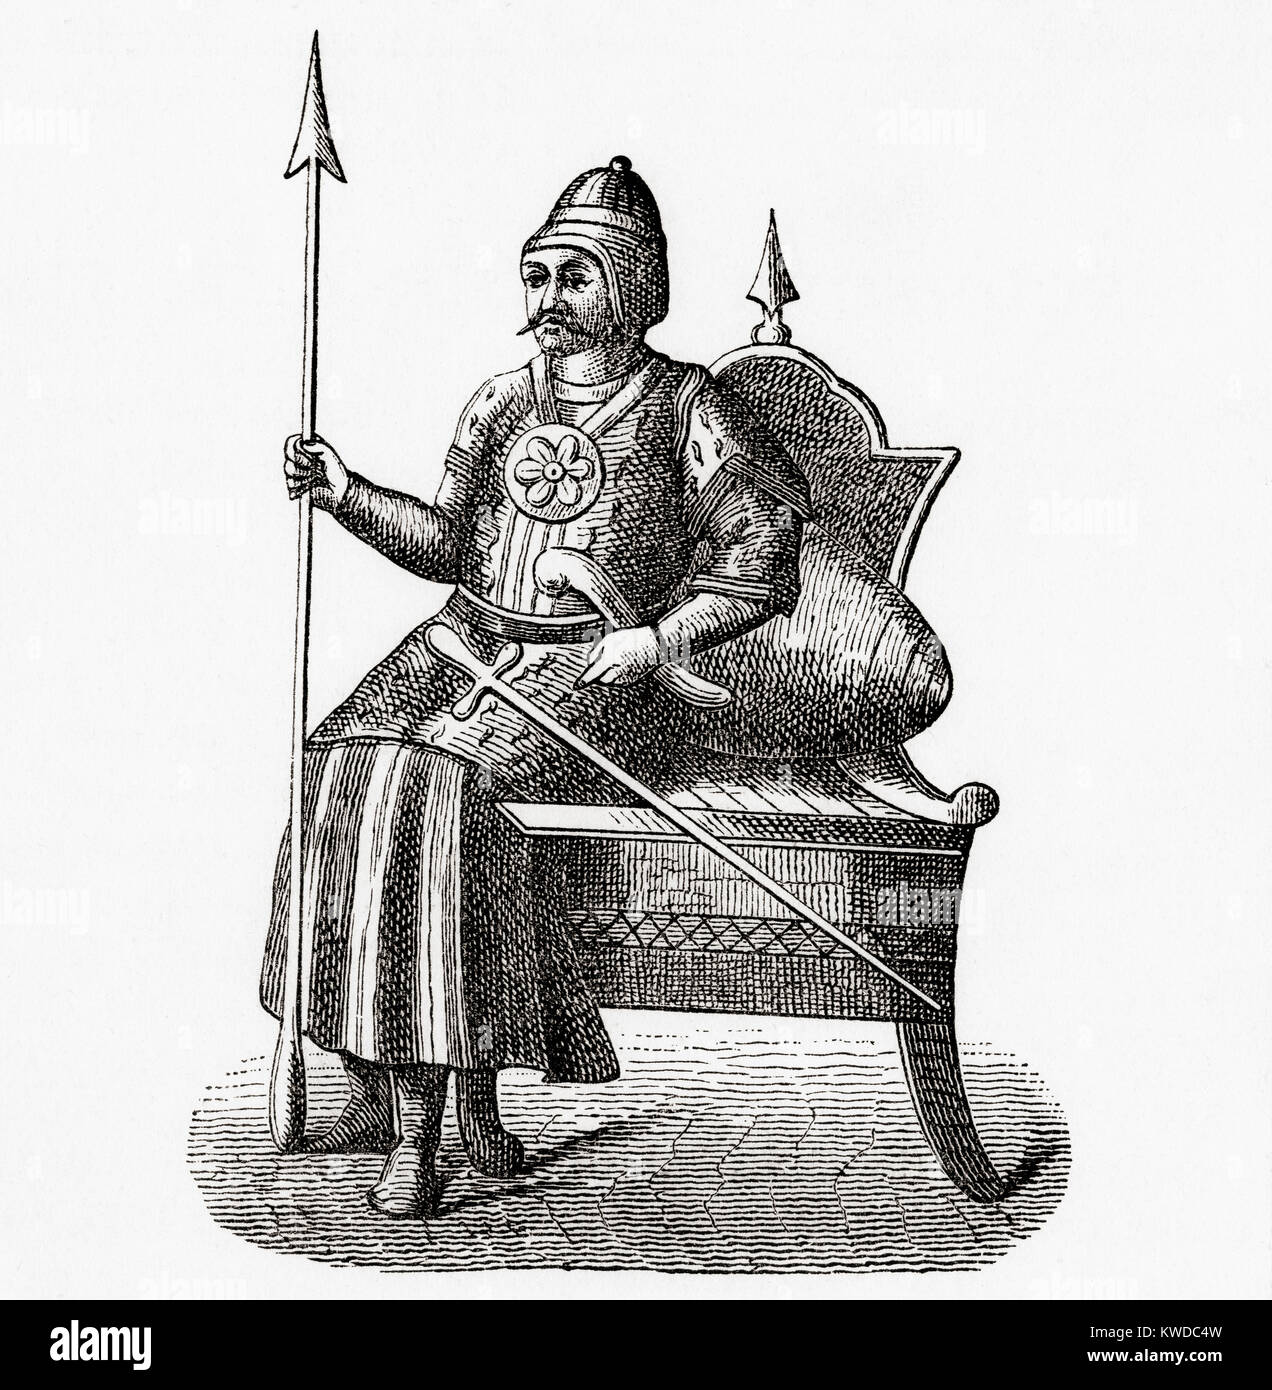 Timur, 1336-1405, aka Amir Timur oder Tamerlane. Turco-Mongol Eroberer. Als Gründer des Timurid Empire in Persien und in Zentralasien, die er der erste Herrscher in der timurid Dynasty wurde. Von Station und Lock's illustrierte Geschichte der Welt, veröffentlicht C 1882. Stockfoto